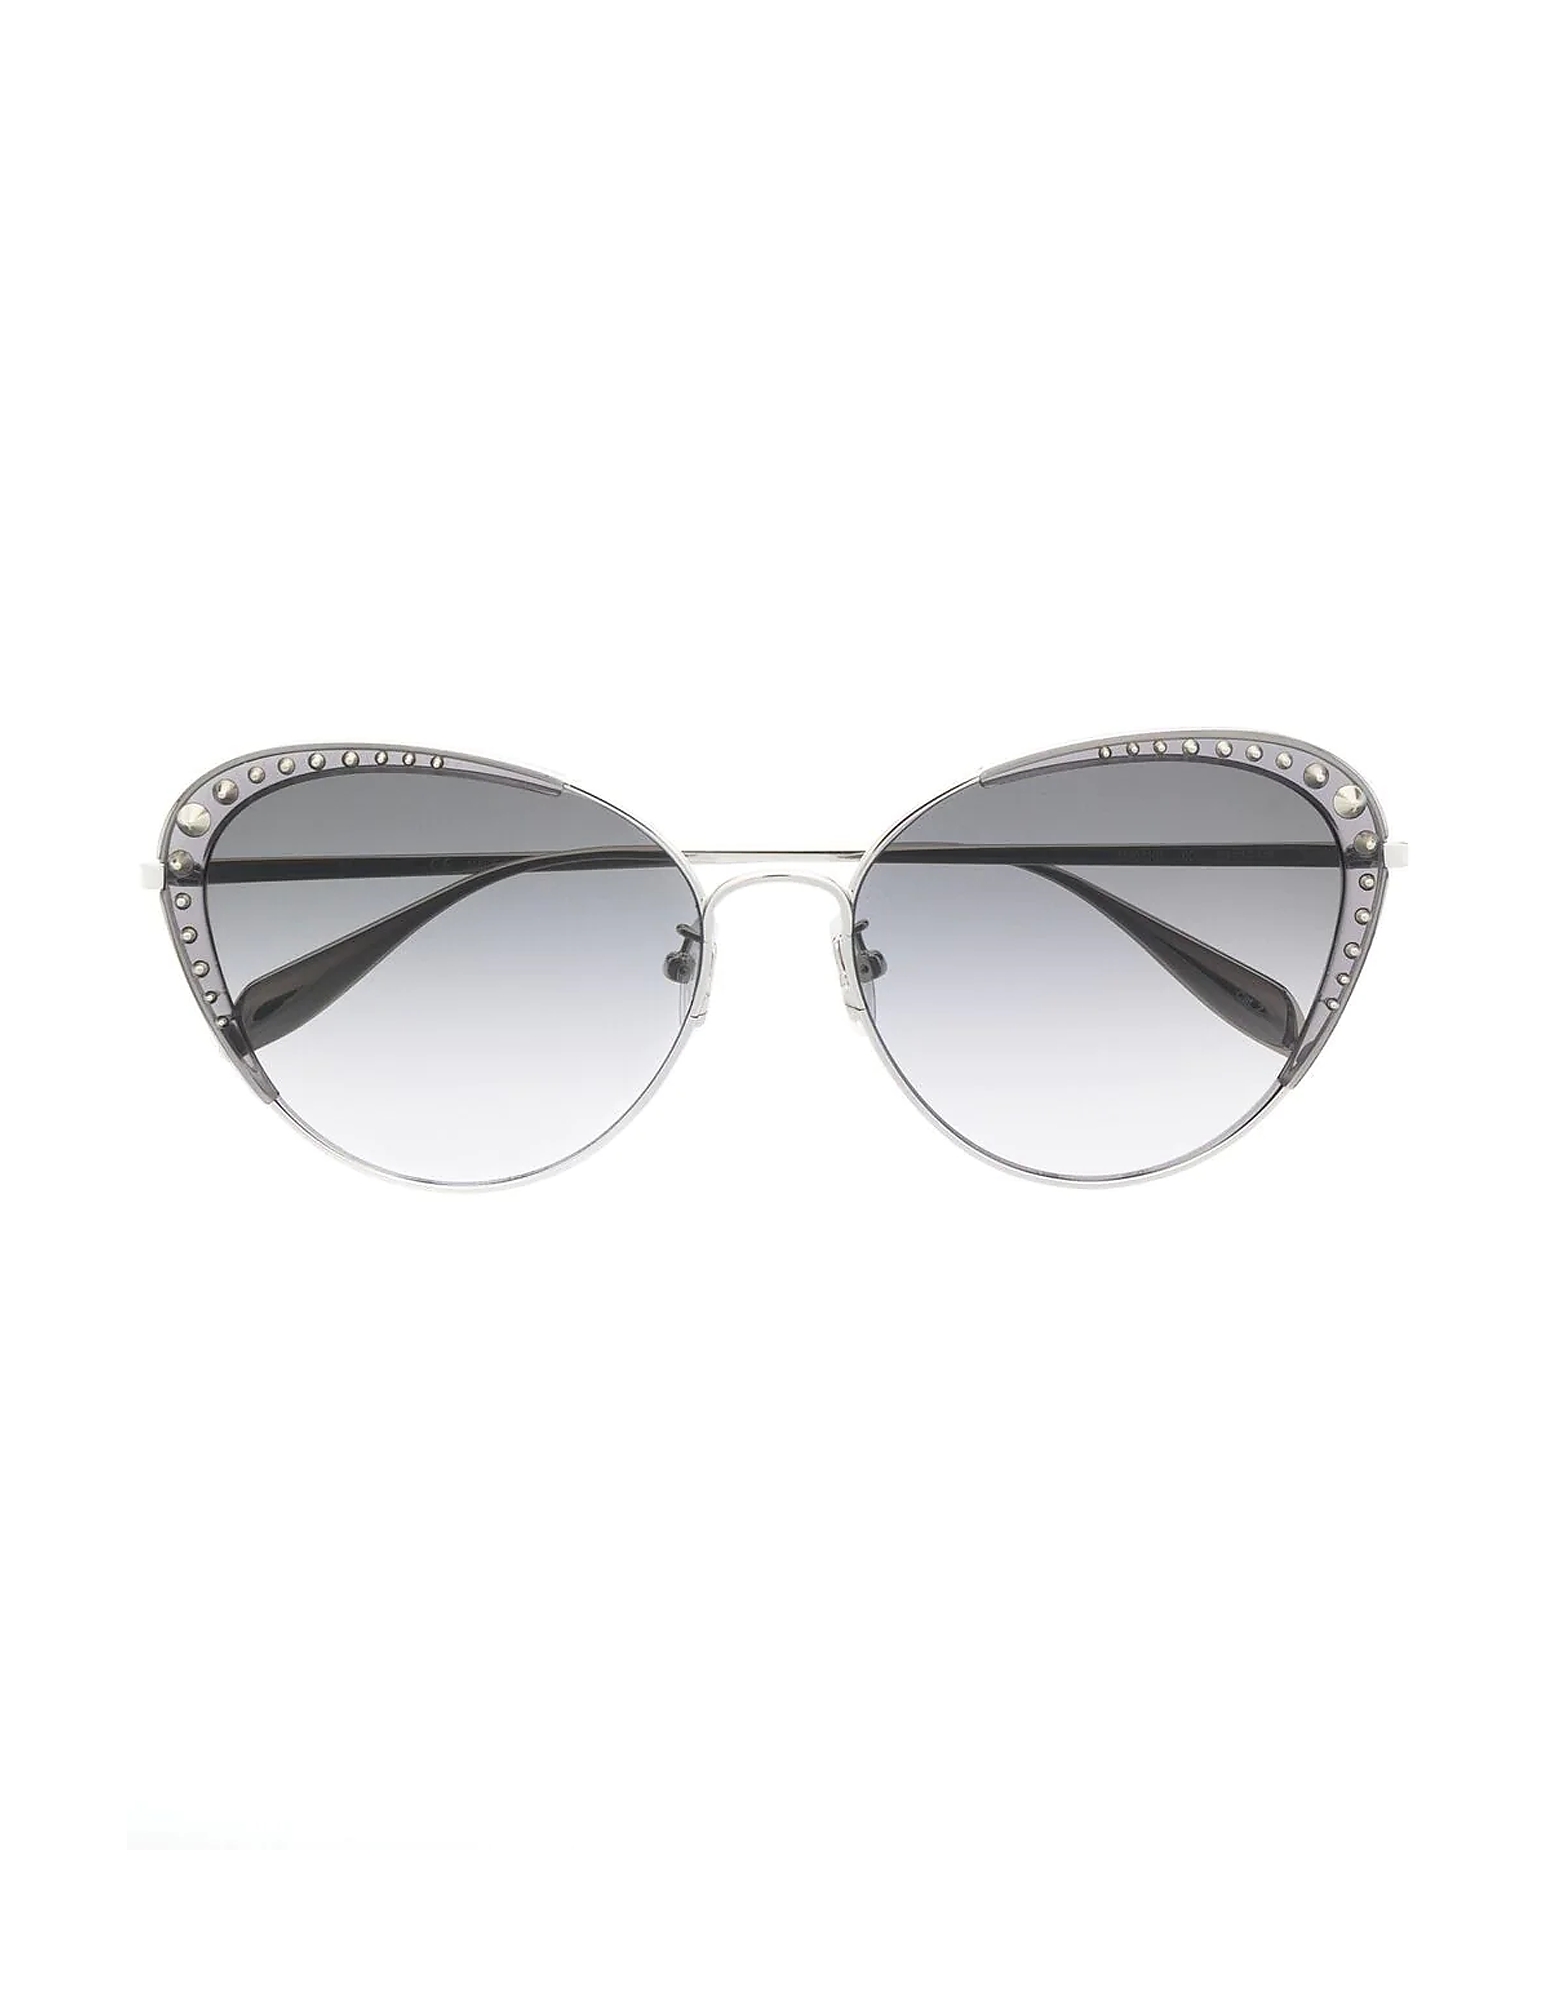 Alexander McQueen Sunglasses AM0310S Silver Spike Studs Cat-Eye Women's Sunglasses